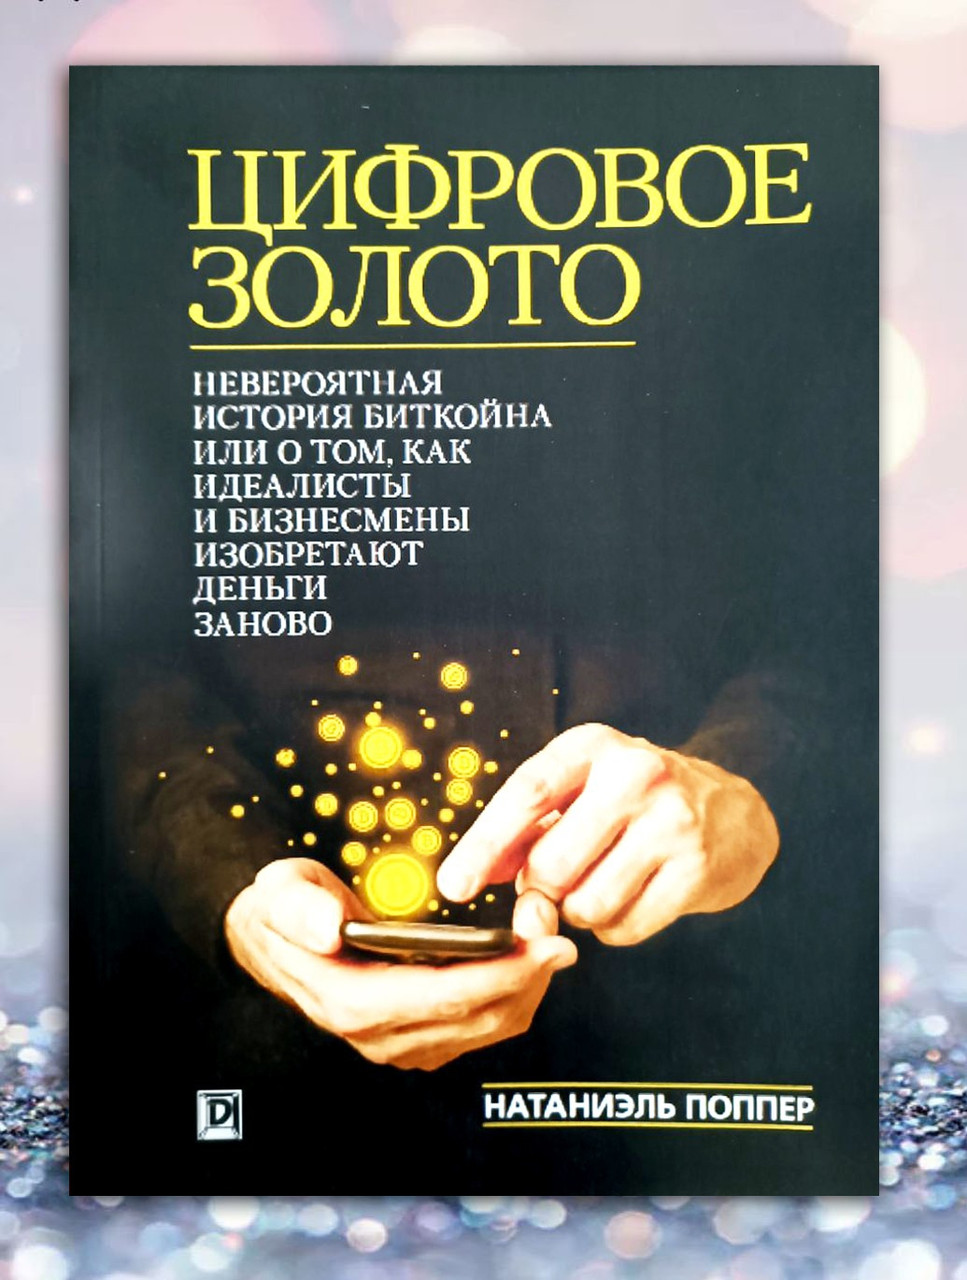 Книга " Цифрове золото. Неймовірна історія біткоїну або про те, як...." Натаніель Поппер